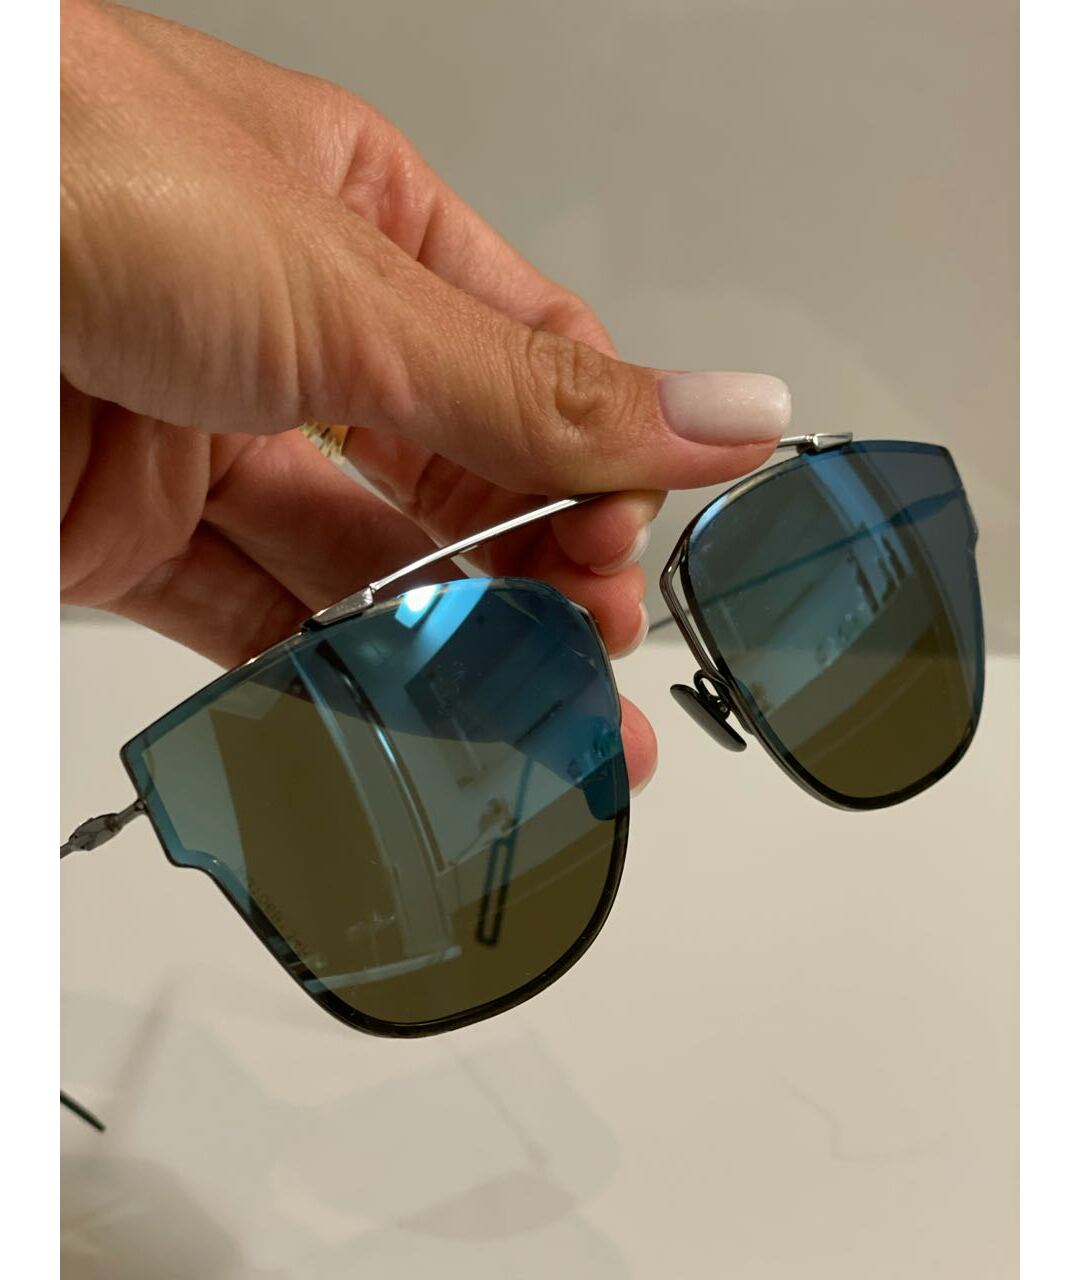 DIOR HOMME Черные металлические солнцезащитные очки, фото 3